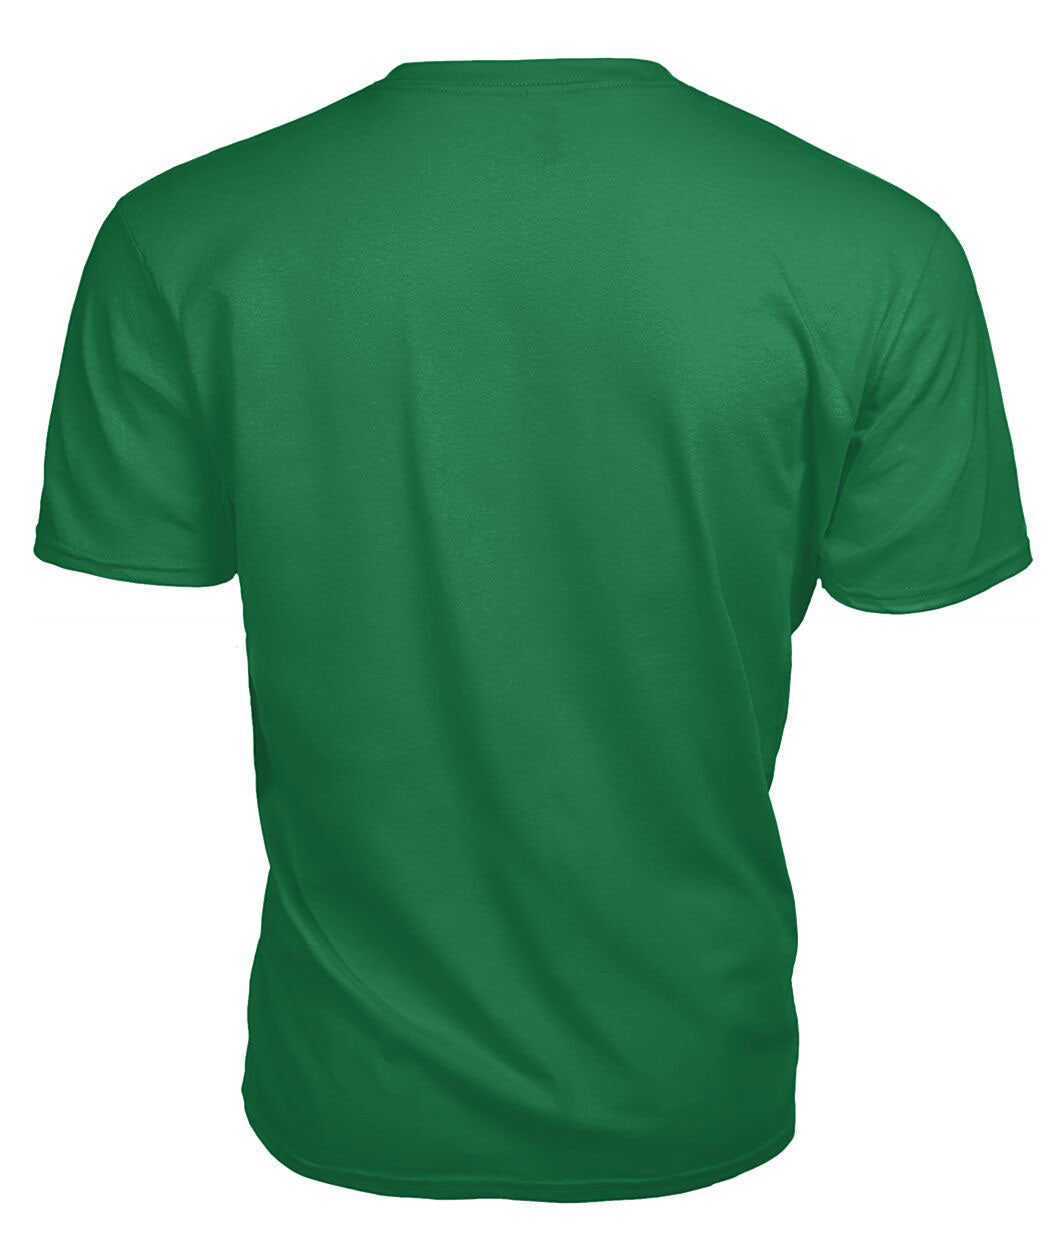 Newton Tartan Crest 2D T-shirt - Blood Runs Through My Veins Style